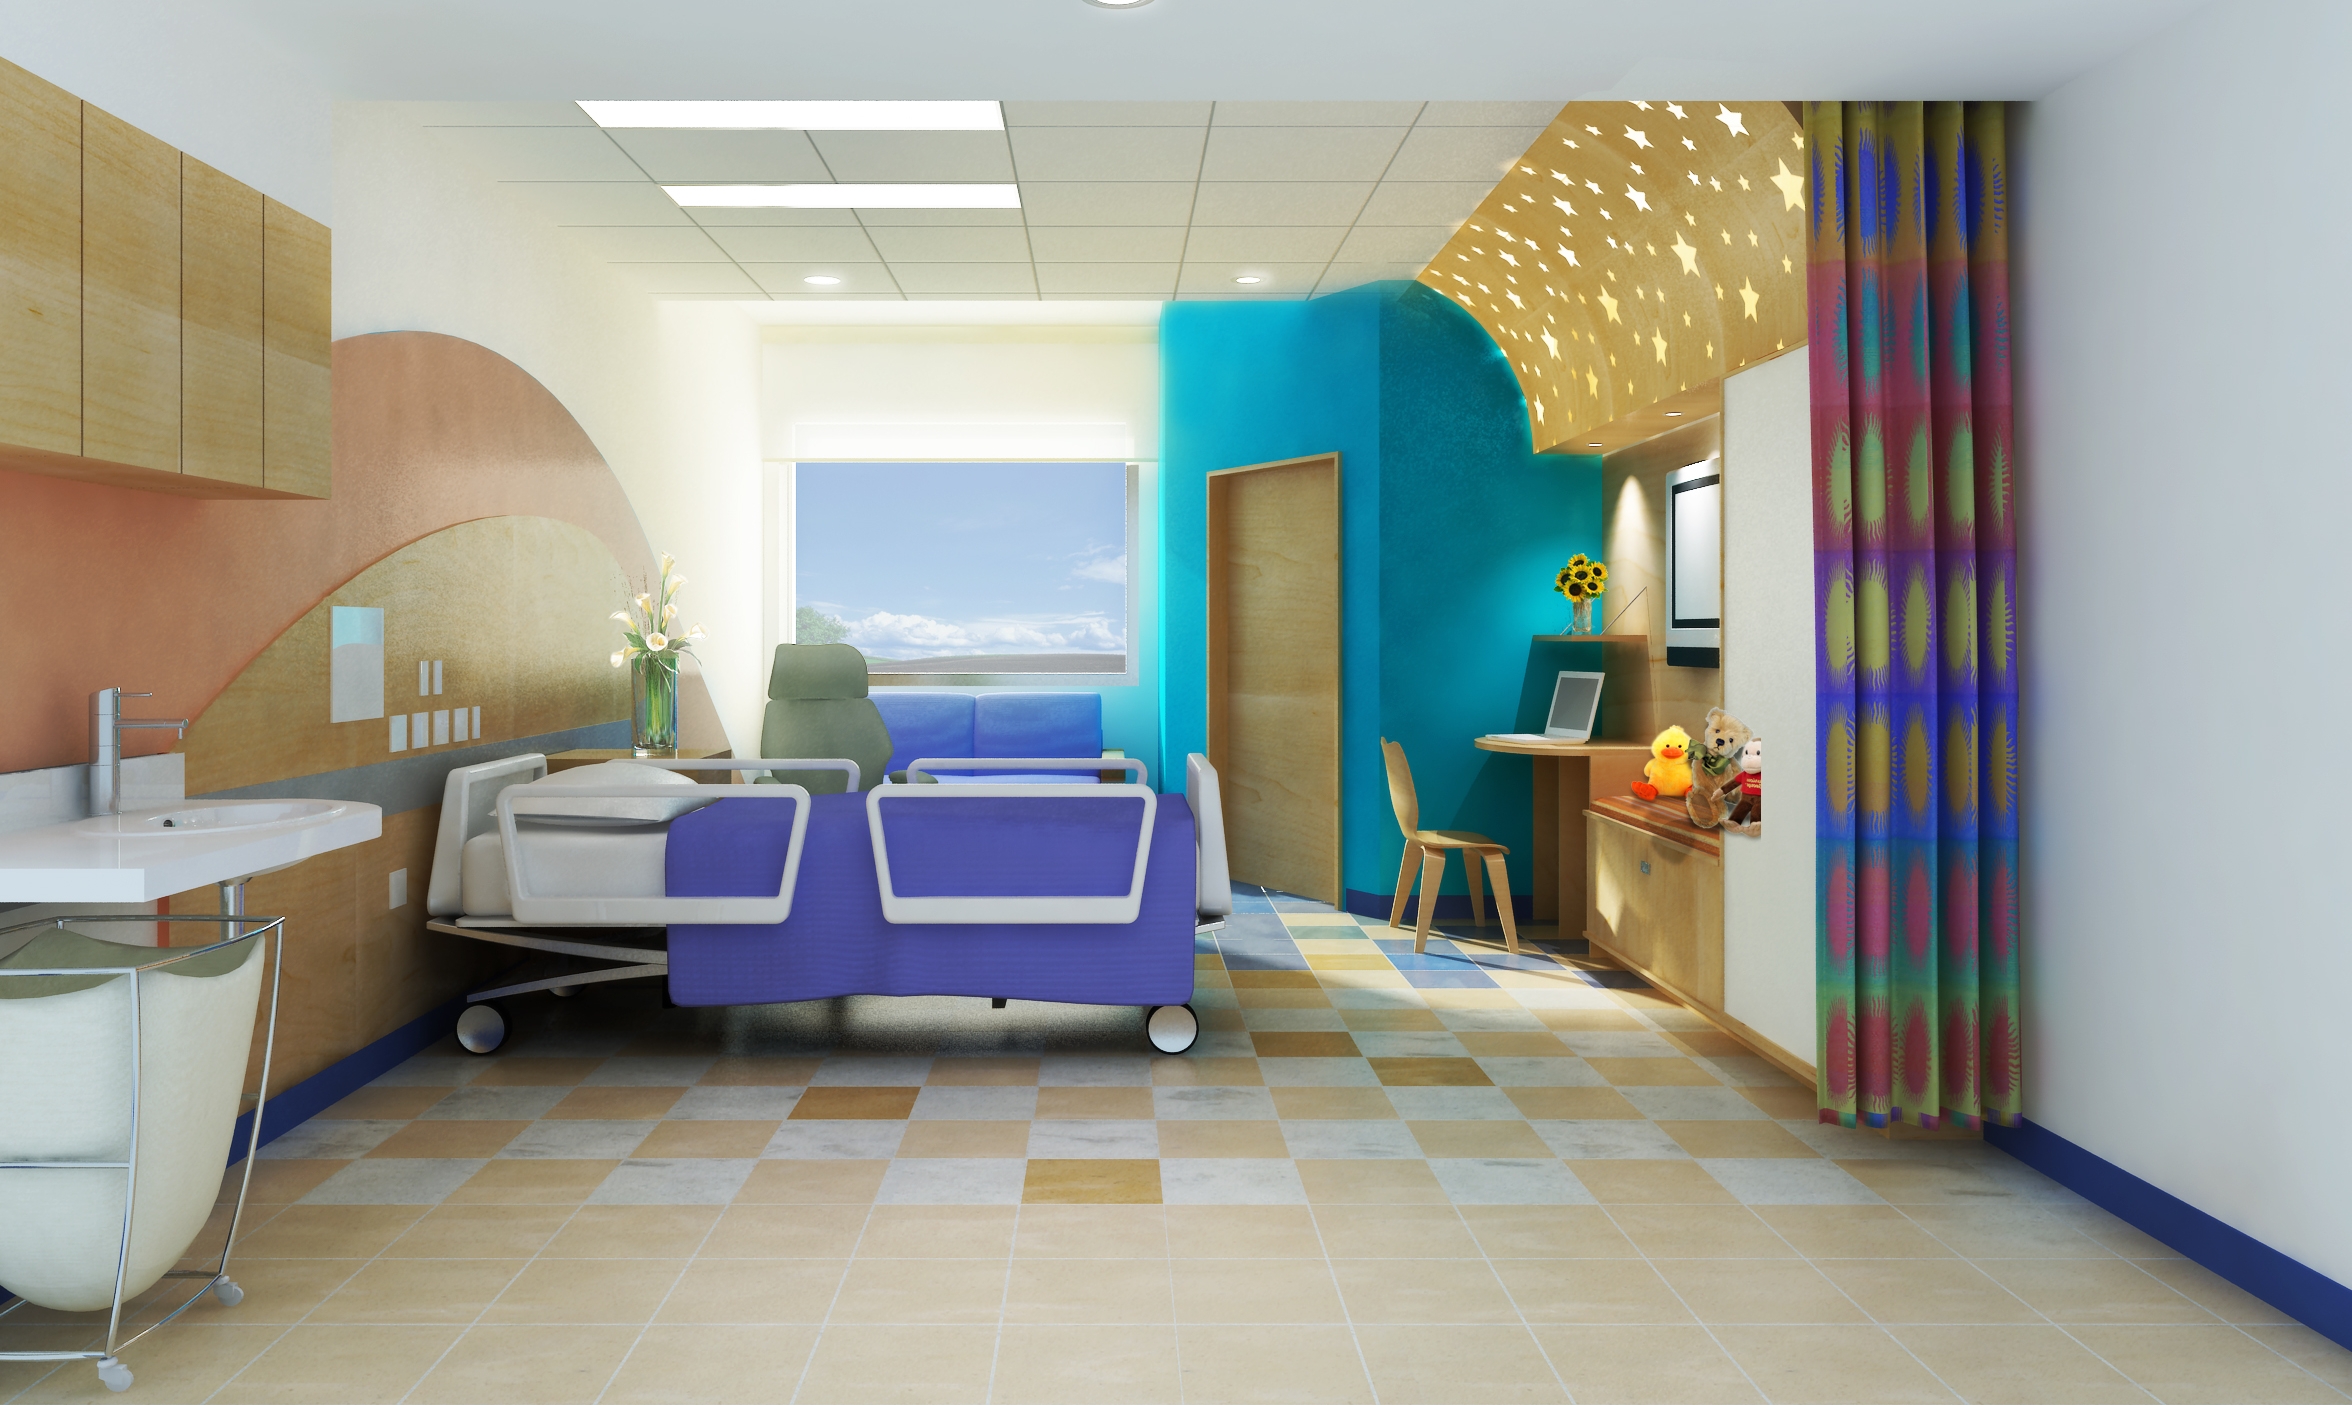 epch-rendering-patient-room2.jpg